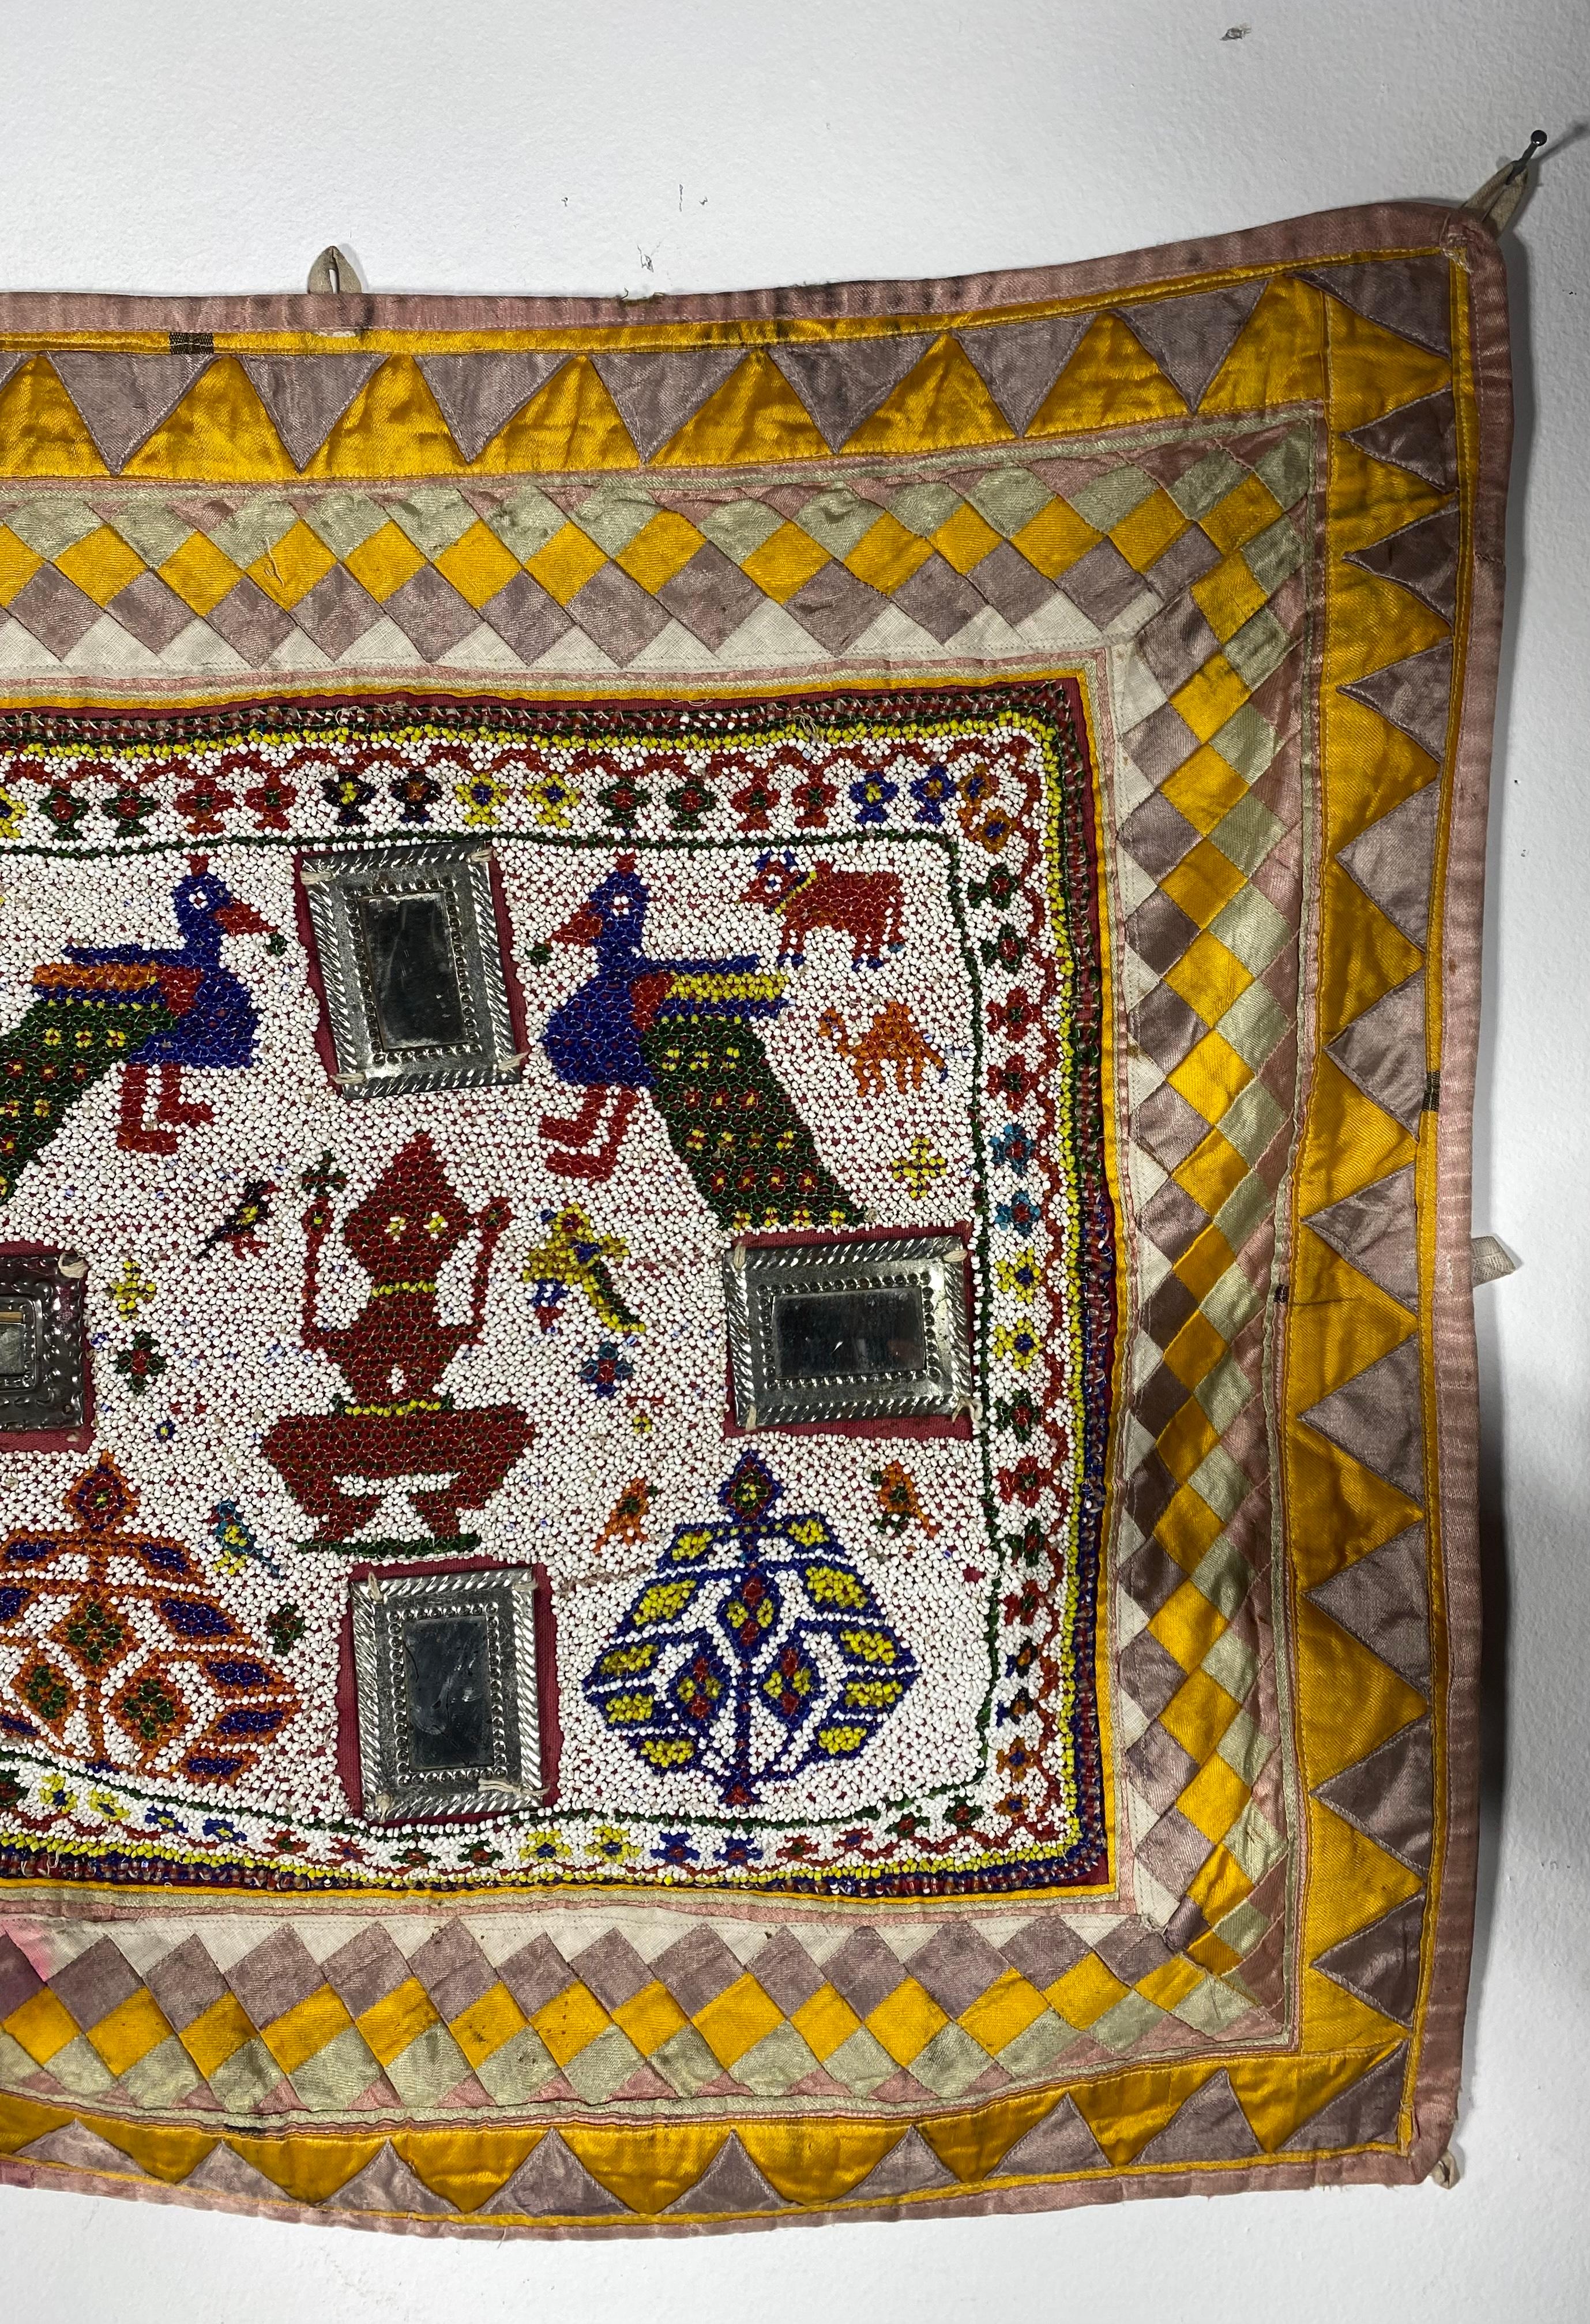 Perlé / Brodé à la main  Tissu Chakla Gujarat Saurashta Textile de l'Inde,, Merveilleusement décoré... Travail de perles complexe, miroirs appliqués inhabituels, quelques décolorations (voir photo) Ce textile fait et perlé à la main provient de